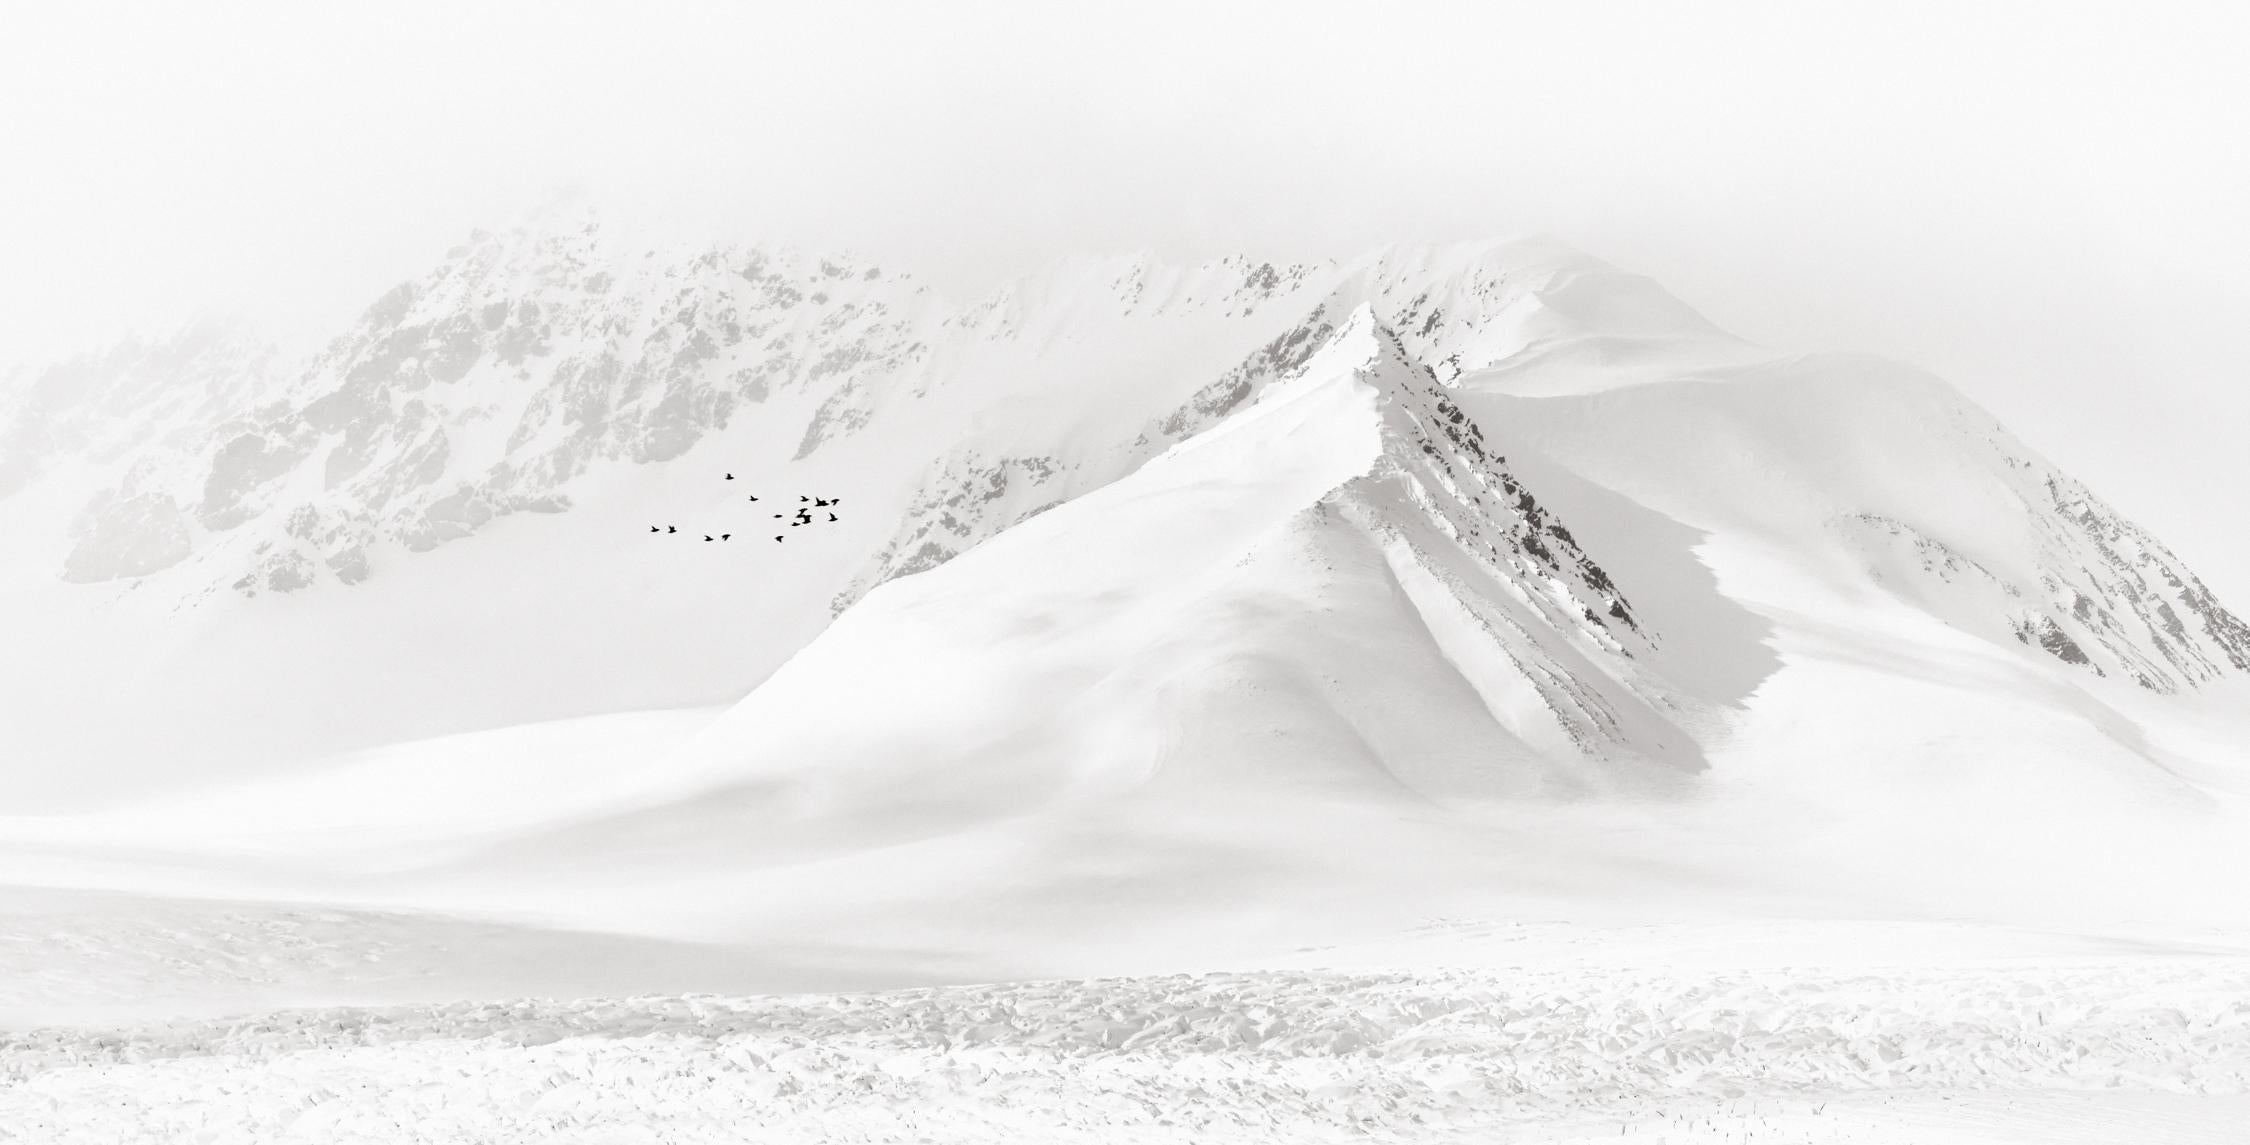 Black and White Photograph Drew Doggett - Paysage minimal, photographie en noir et blanc, glace de mer dans l'Arctique avec oiseaux